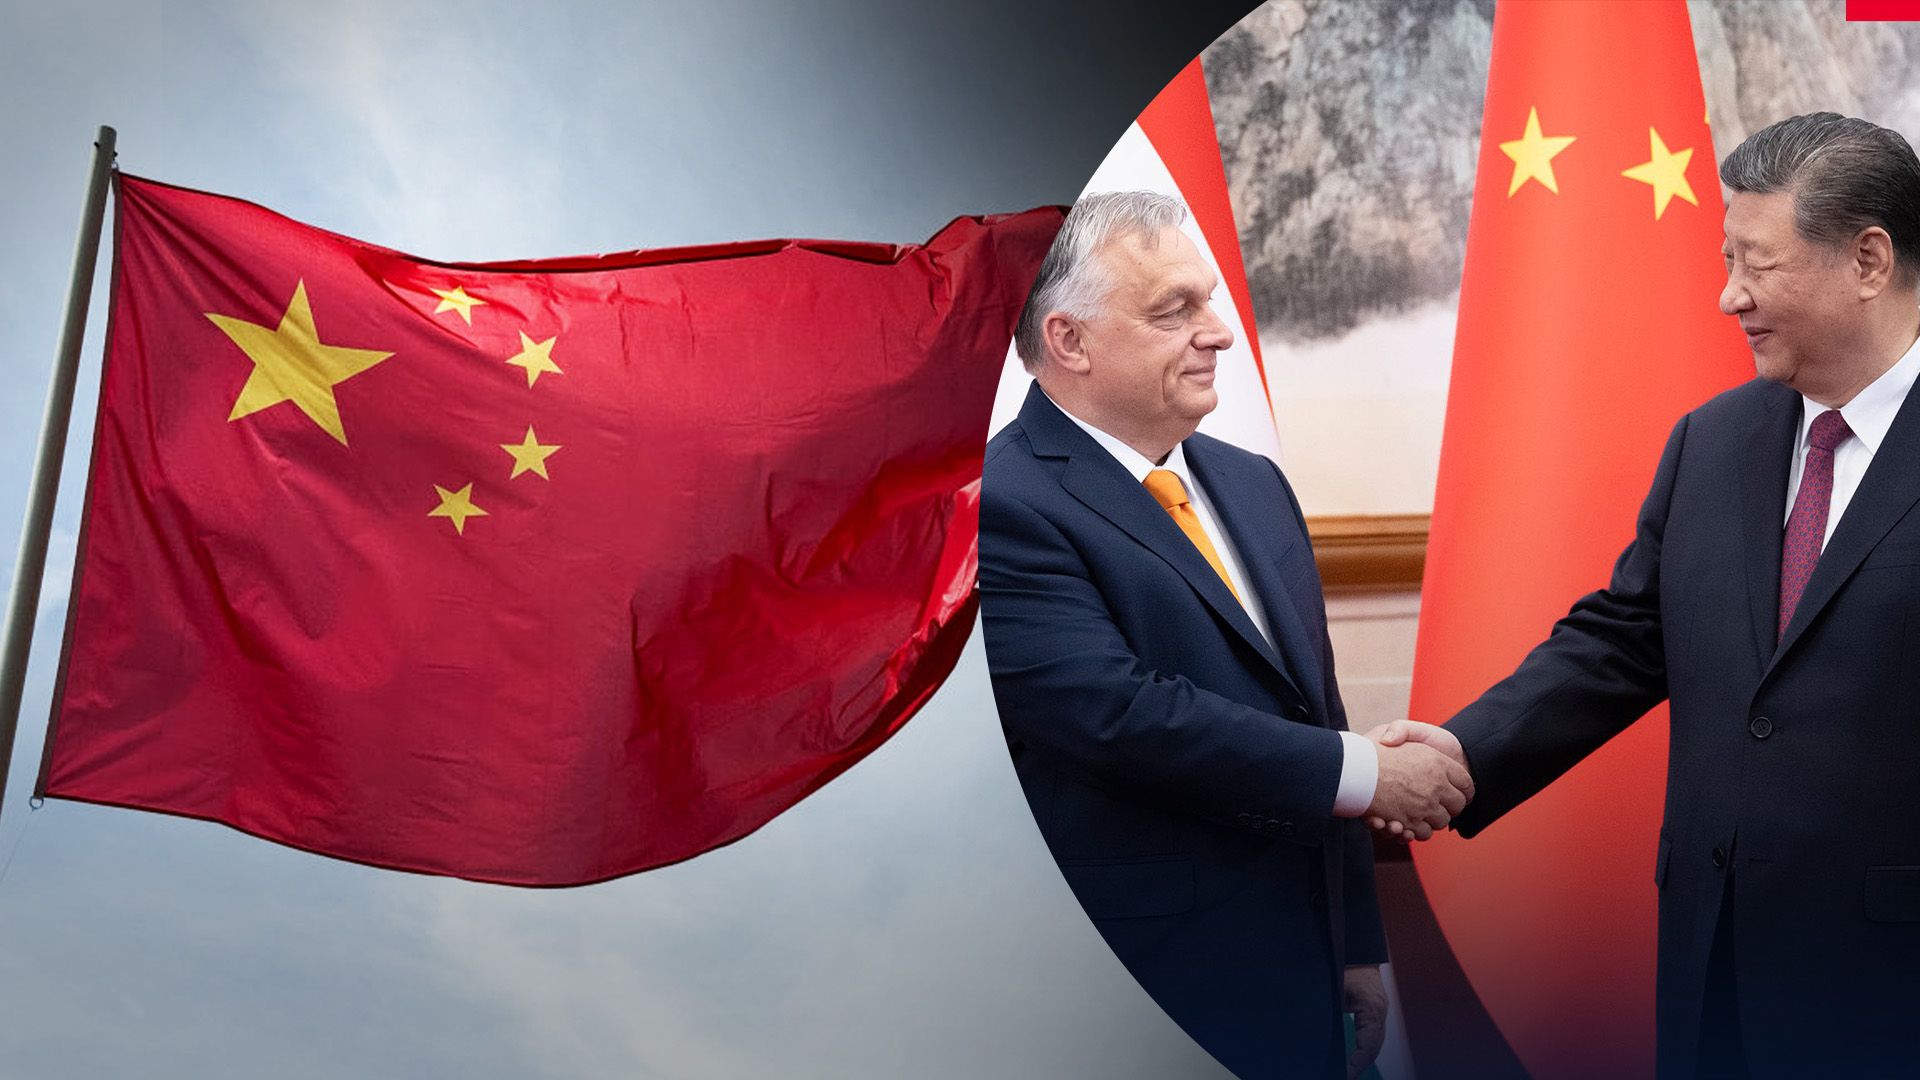 Что известно о встрече лидеров Китая и Венгрии